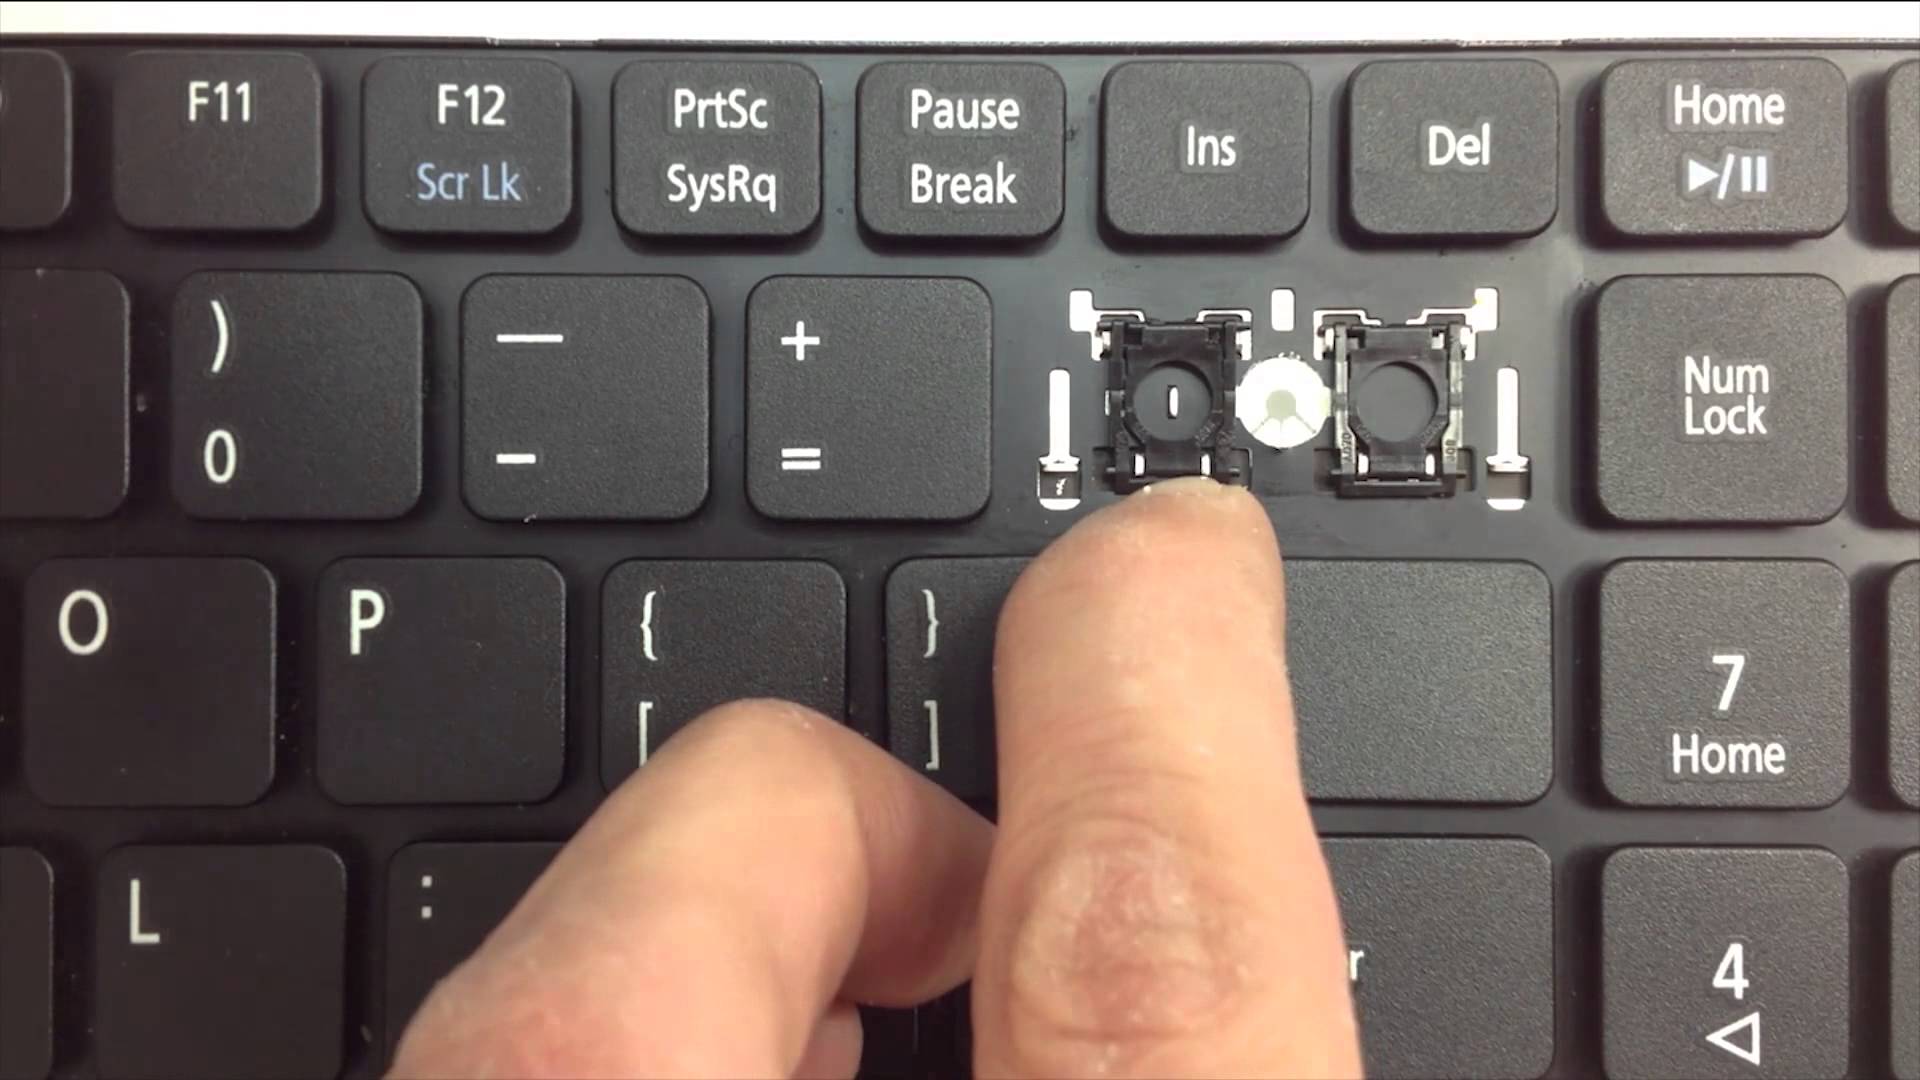 Как снять клавишу с ноутбука - подробная инструкция